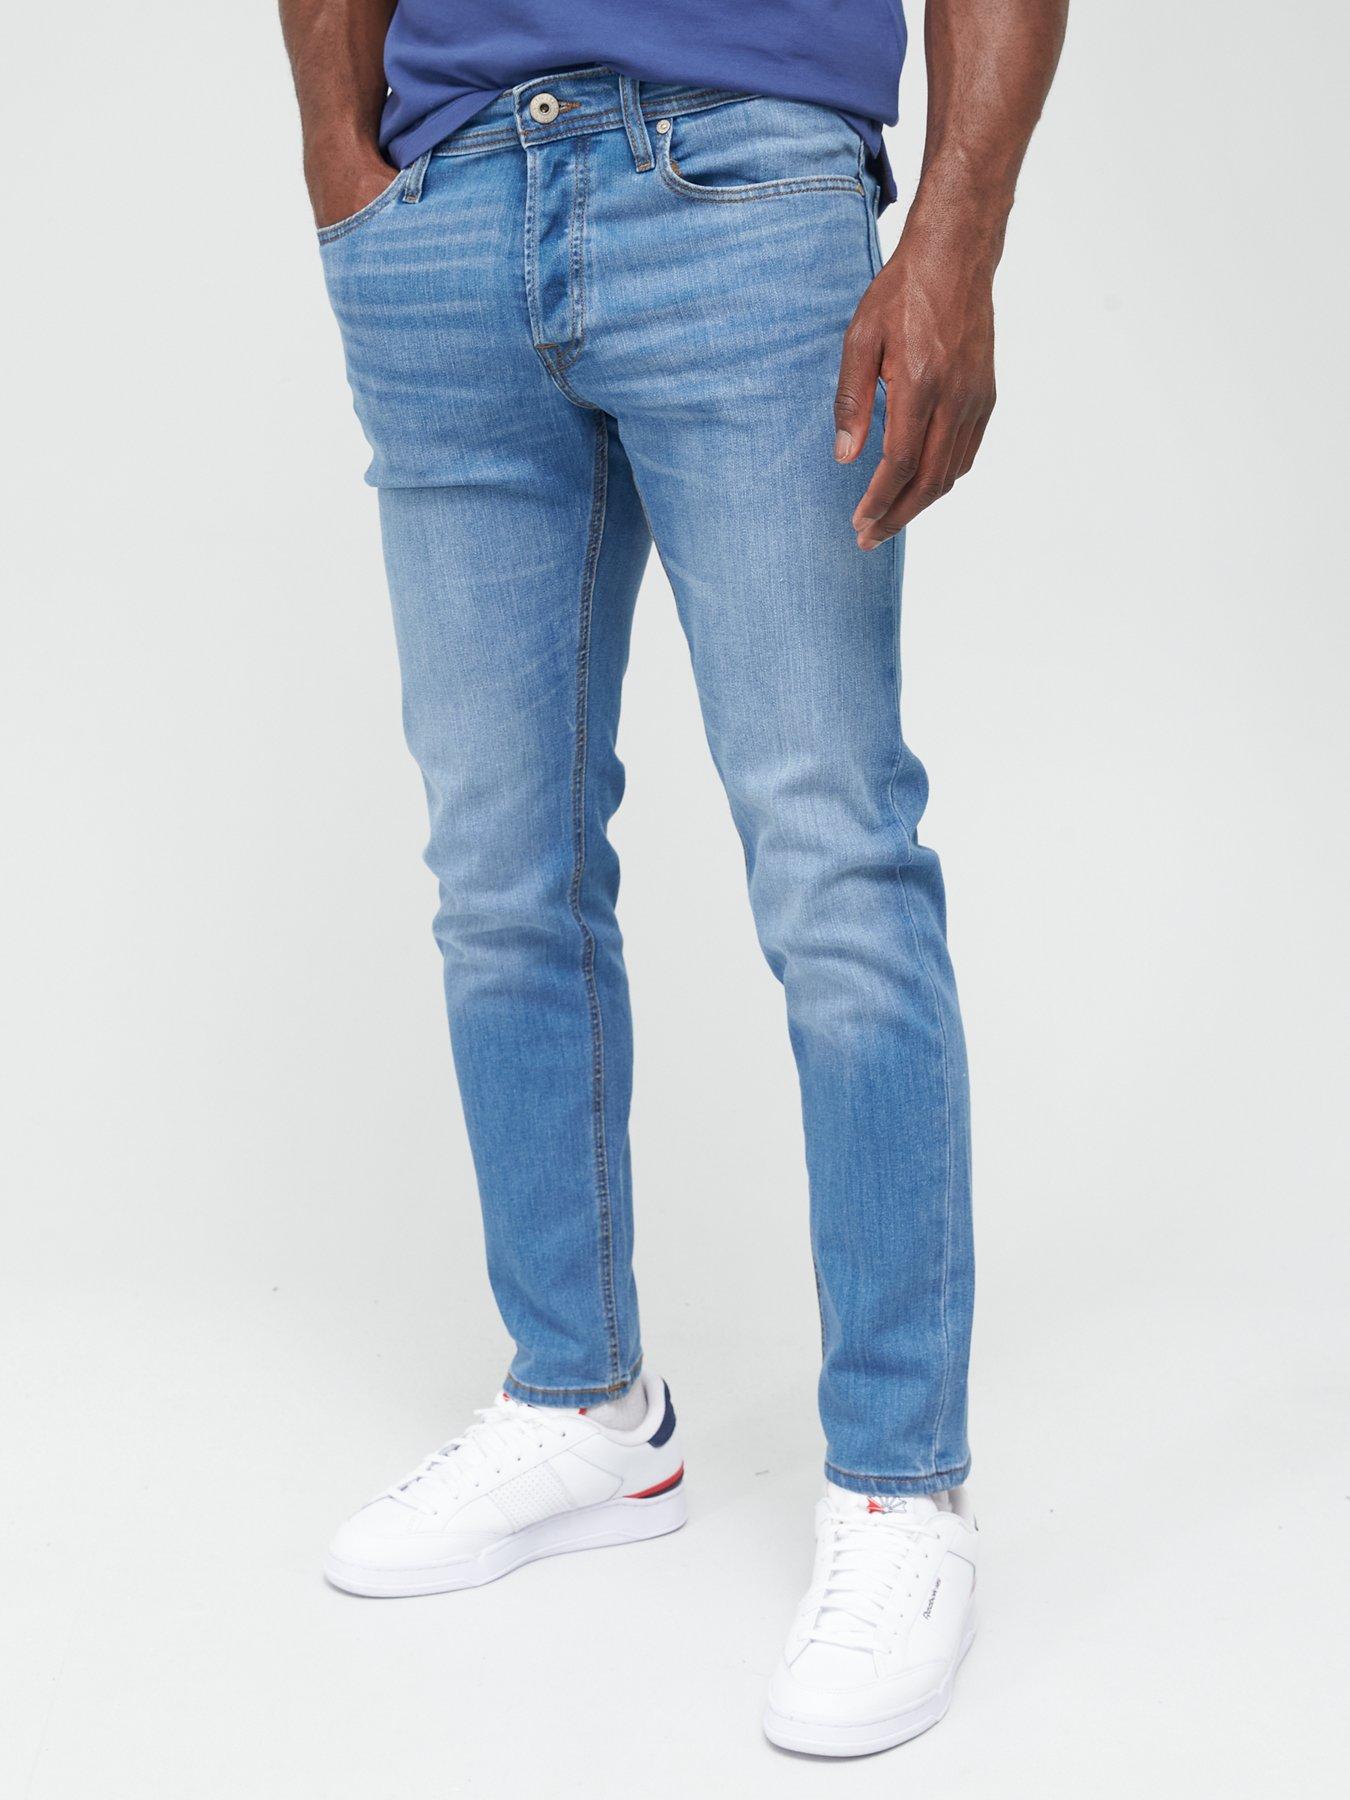 discount 57% Red M Jack & Jones shorts jeans MEN FASHION Jeans Strech 